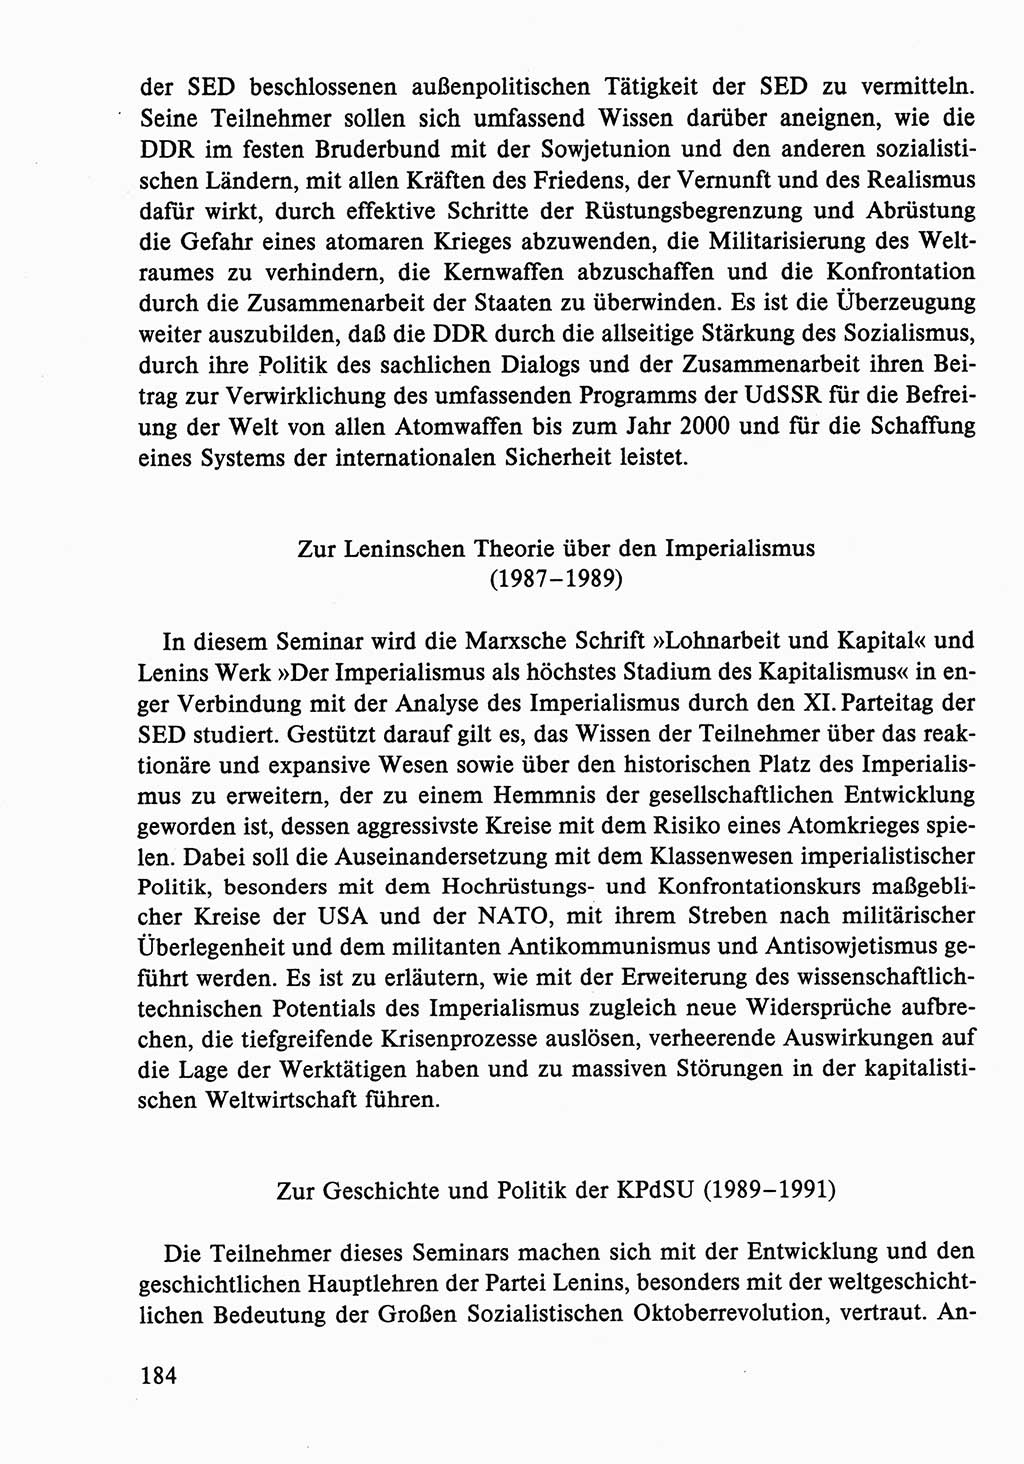 Dokumente der Sozialistischen Einheitspartei Deutschlands (SED) [Deutsche Demokratische Republik (DDR)] 1986-1987, Seite 184 (Dok. SED DDR 1986-1987, S. 184)